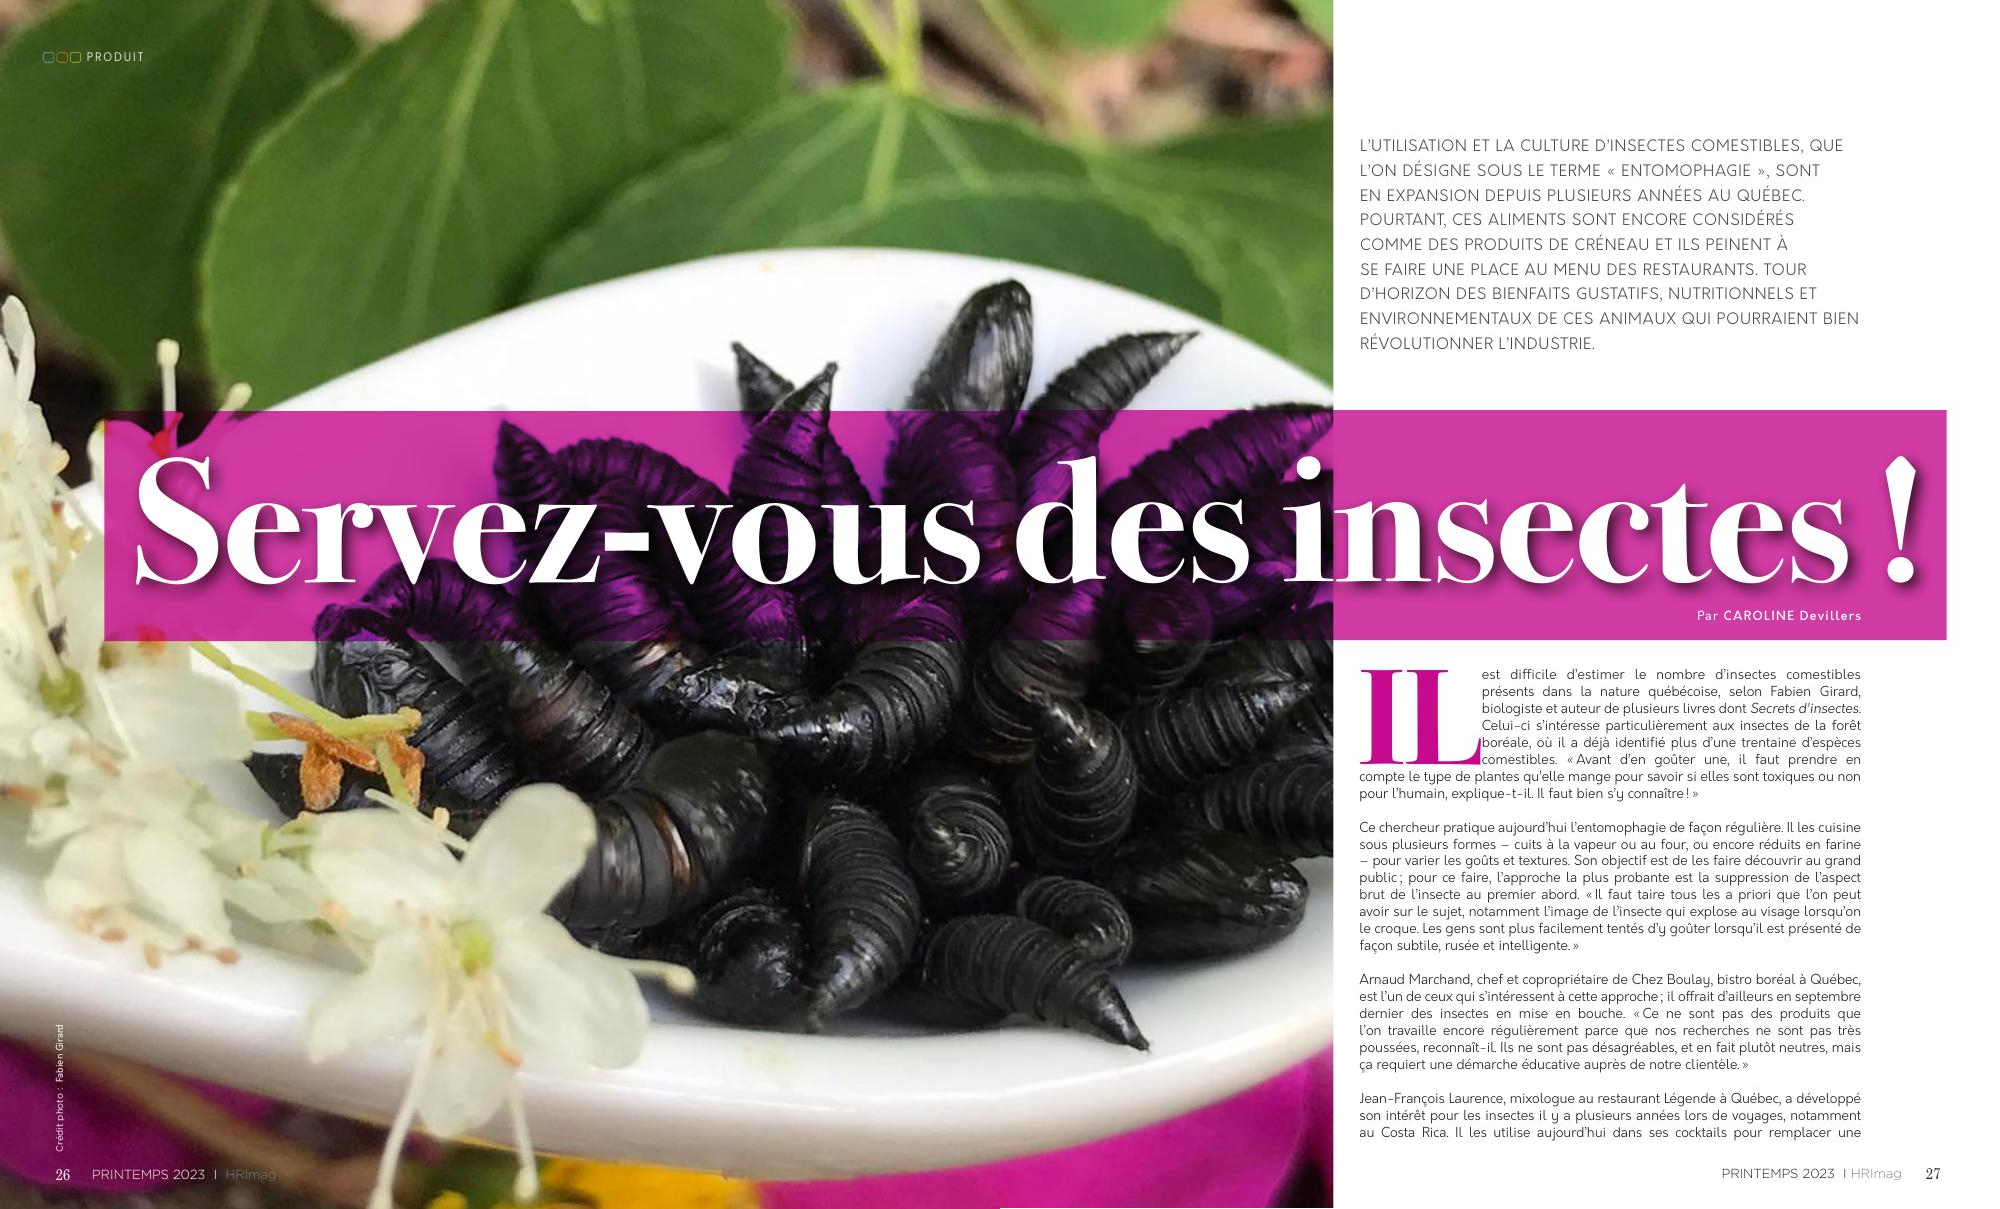 Insectes comestibles: manger des insectes… vraiment?